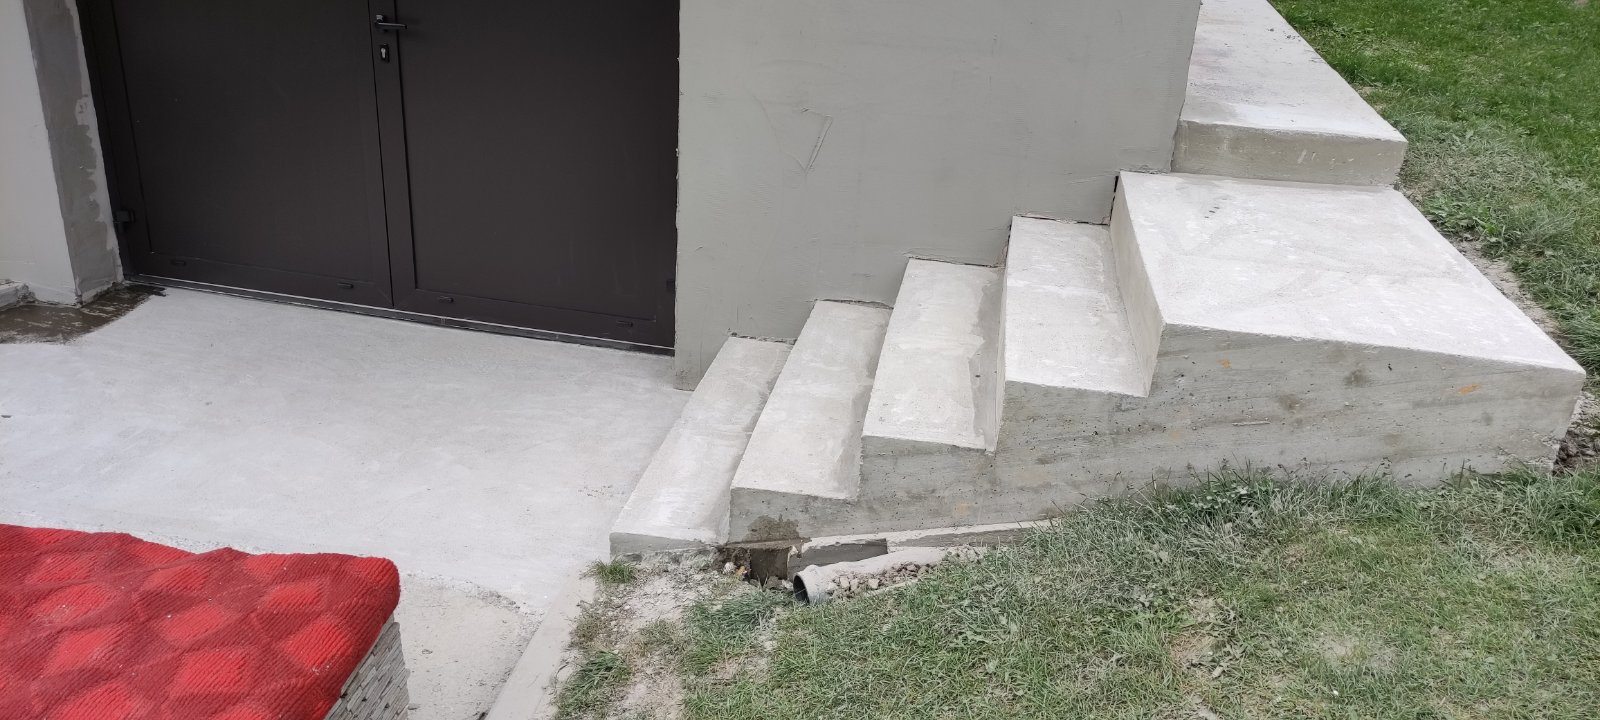 Betónový podklad pre kamenný koberec na schody a dvor rodinného domu